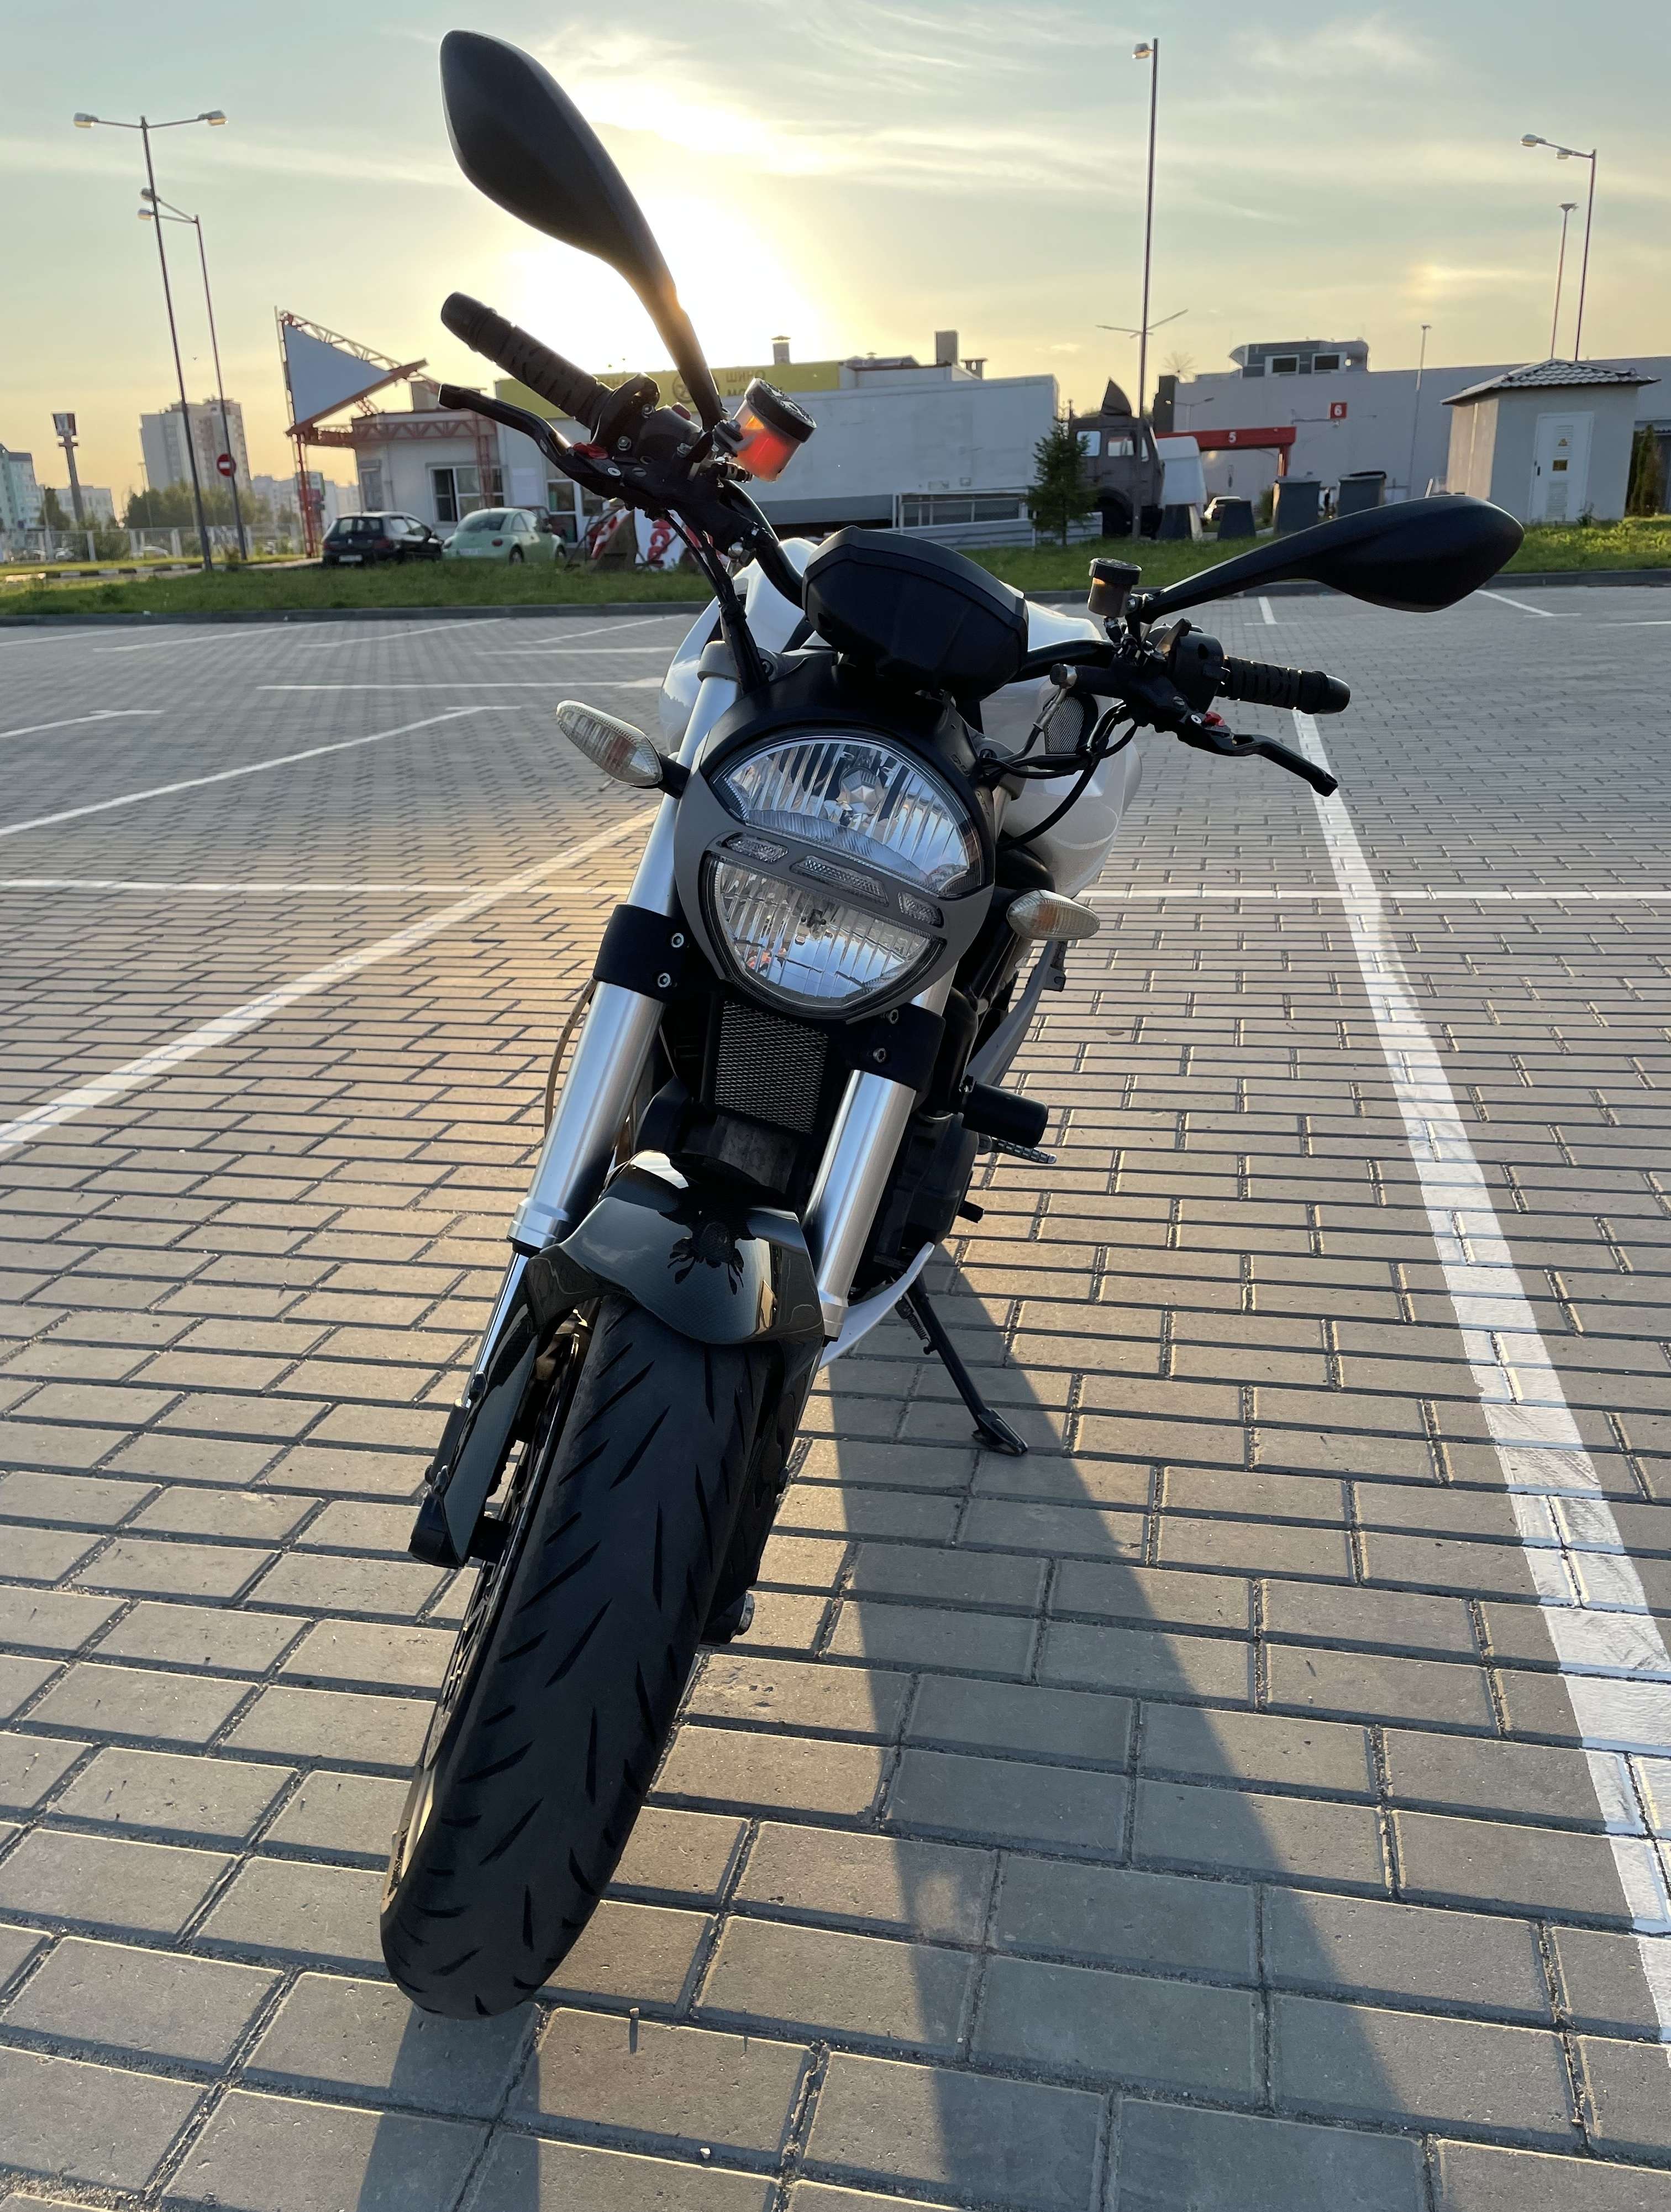 Каталог мотоциклов с фото и ценой в Беларуси в кредит